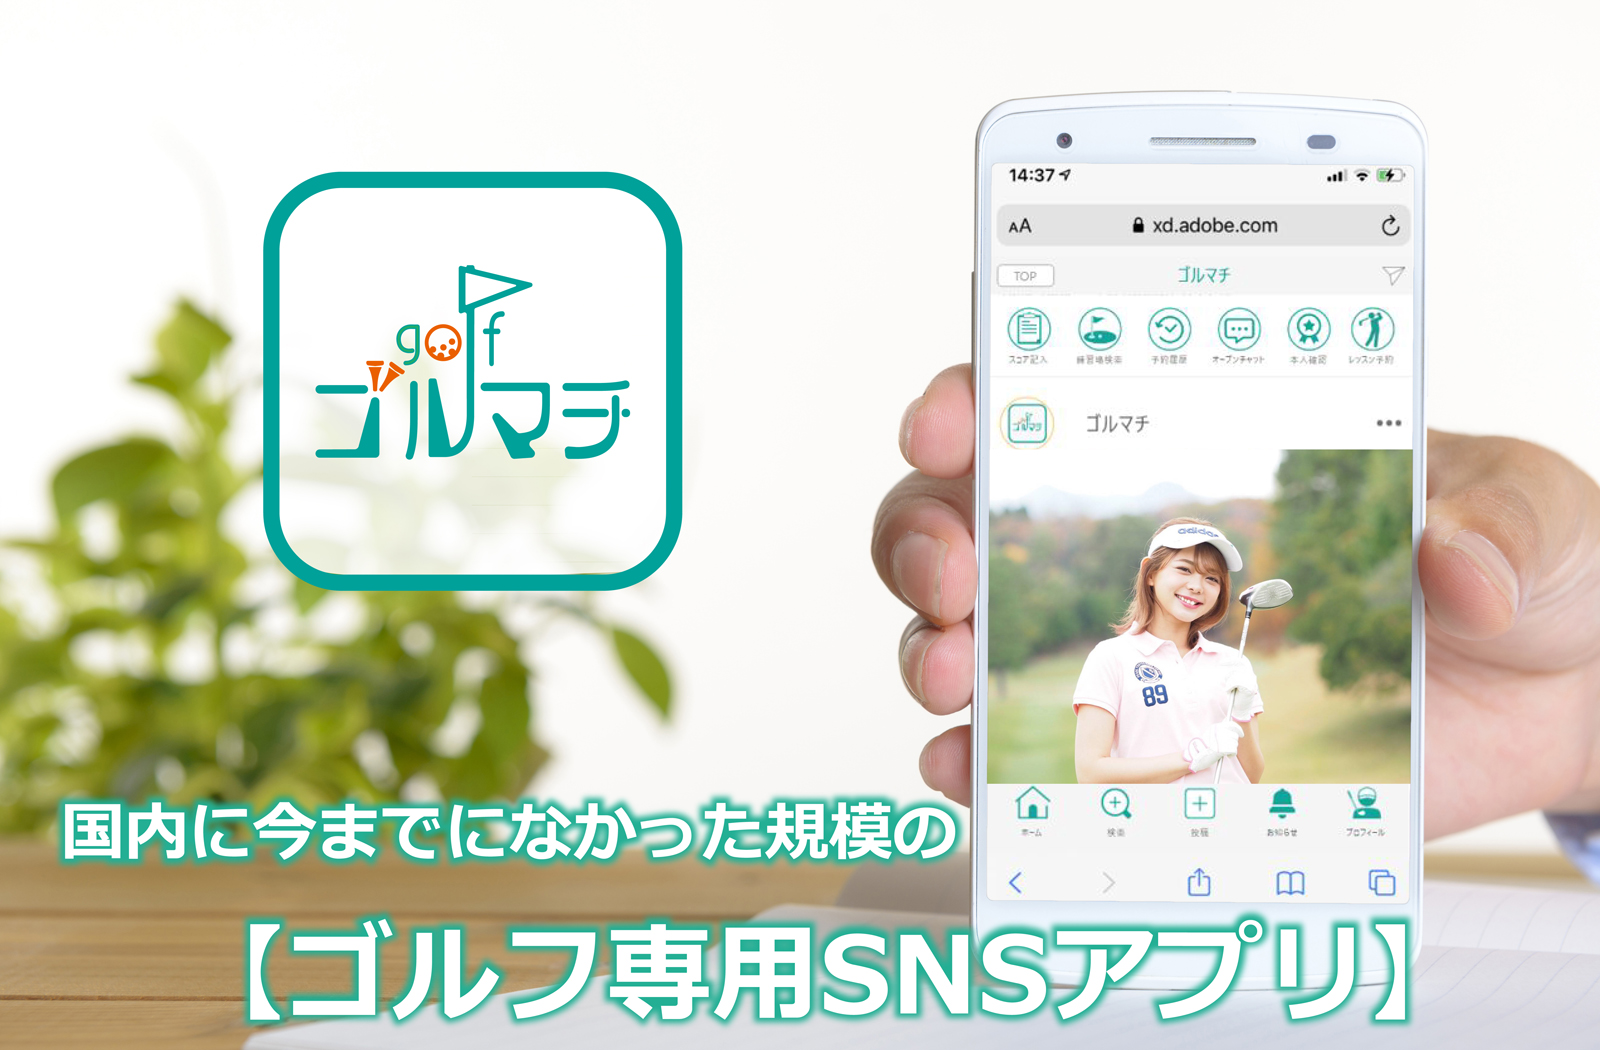 国内最大級のゴルフ専用マッチングアプリ ゴルマチ Sns機能搭載で新開発 Morikoのプレスリリース